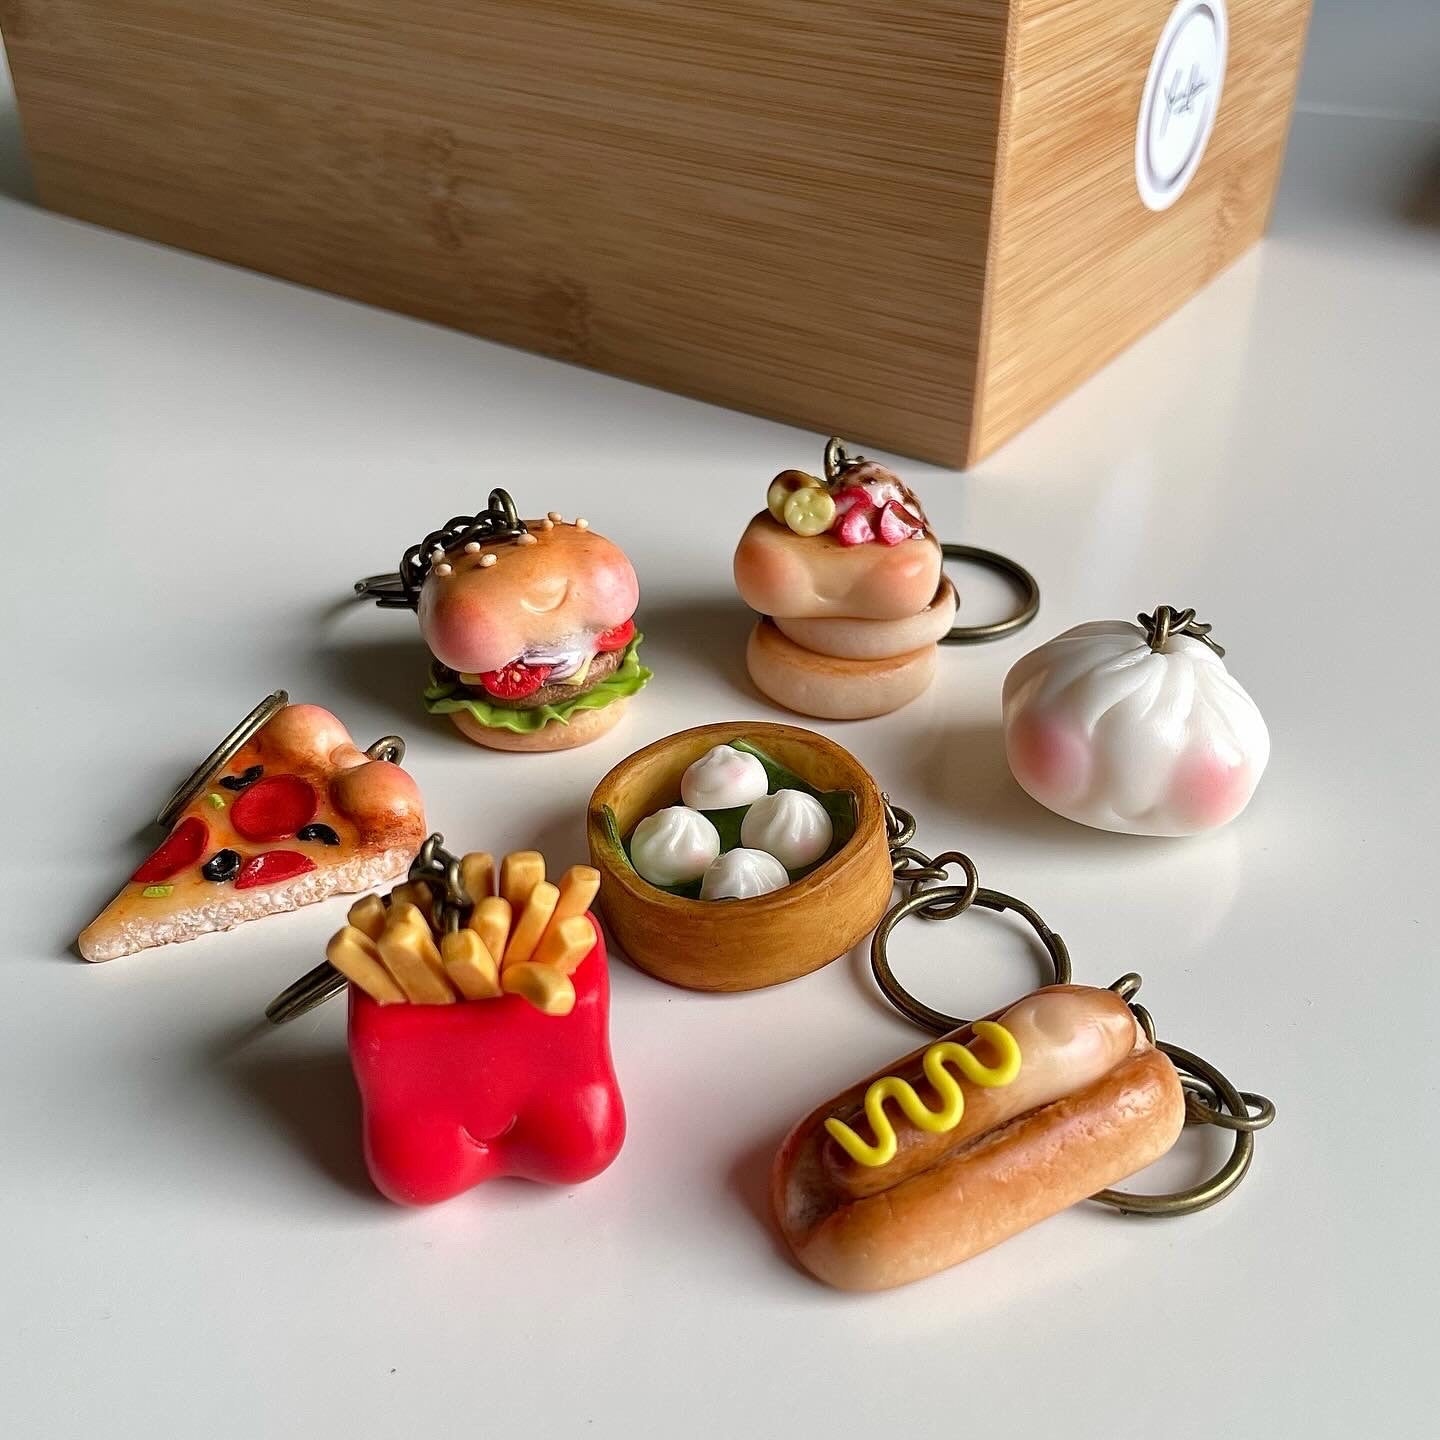 Hotdog keychain, cute hotdog charm, hotdog keyring, cute novelty keychain, polymerclay charm, clay keyring, realistic food, miniature food